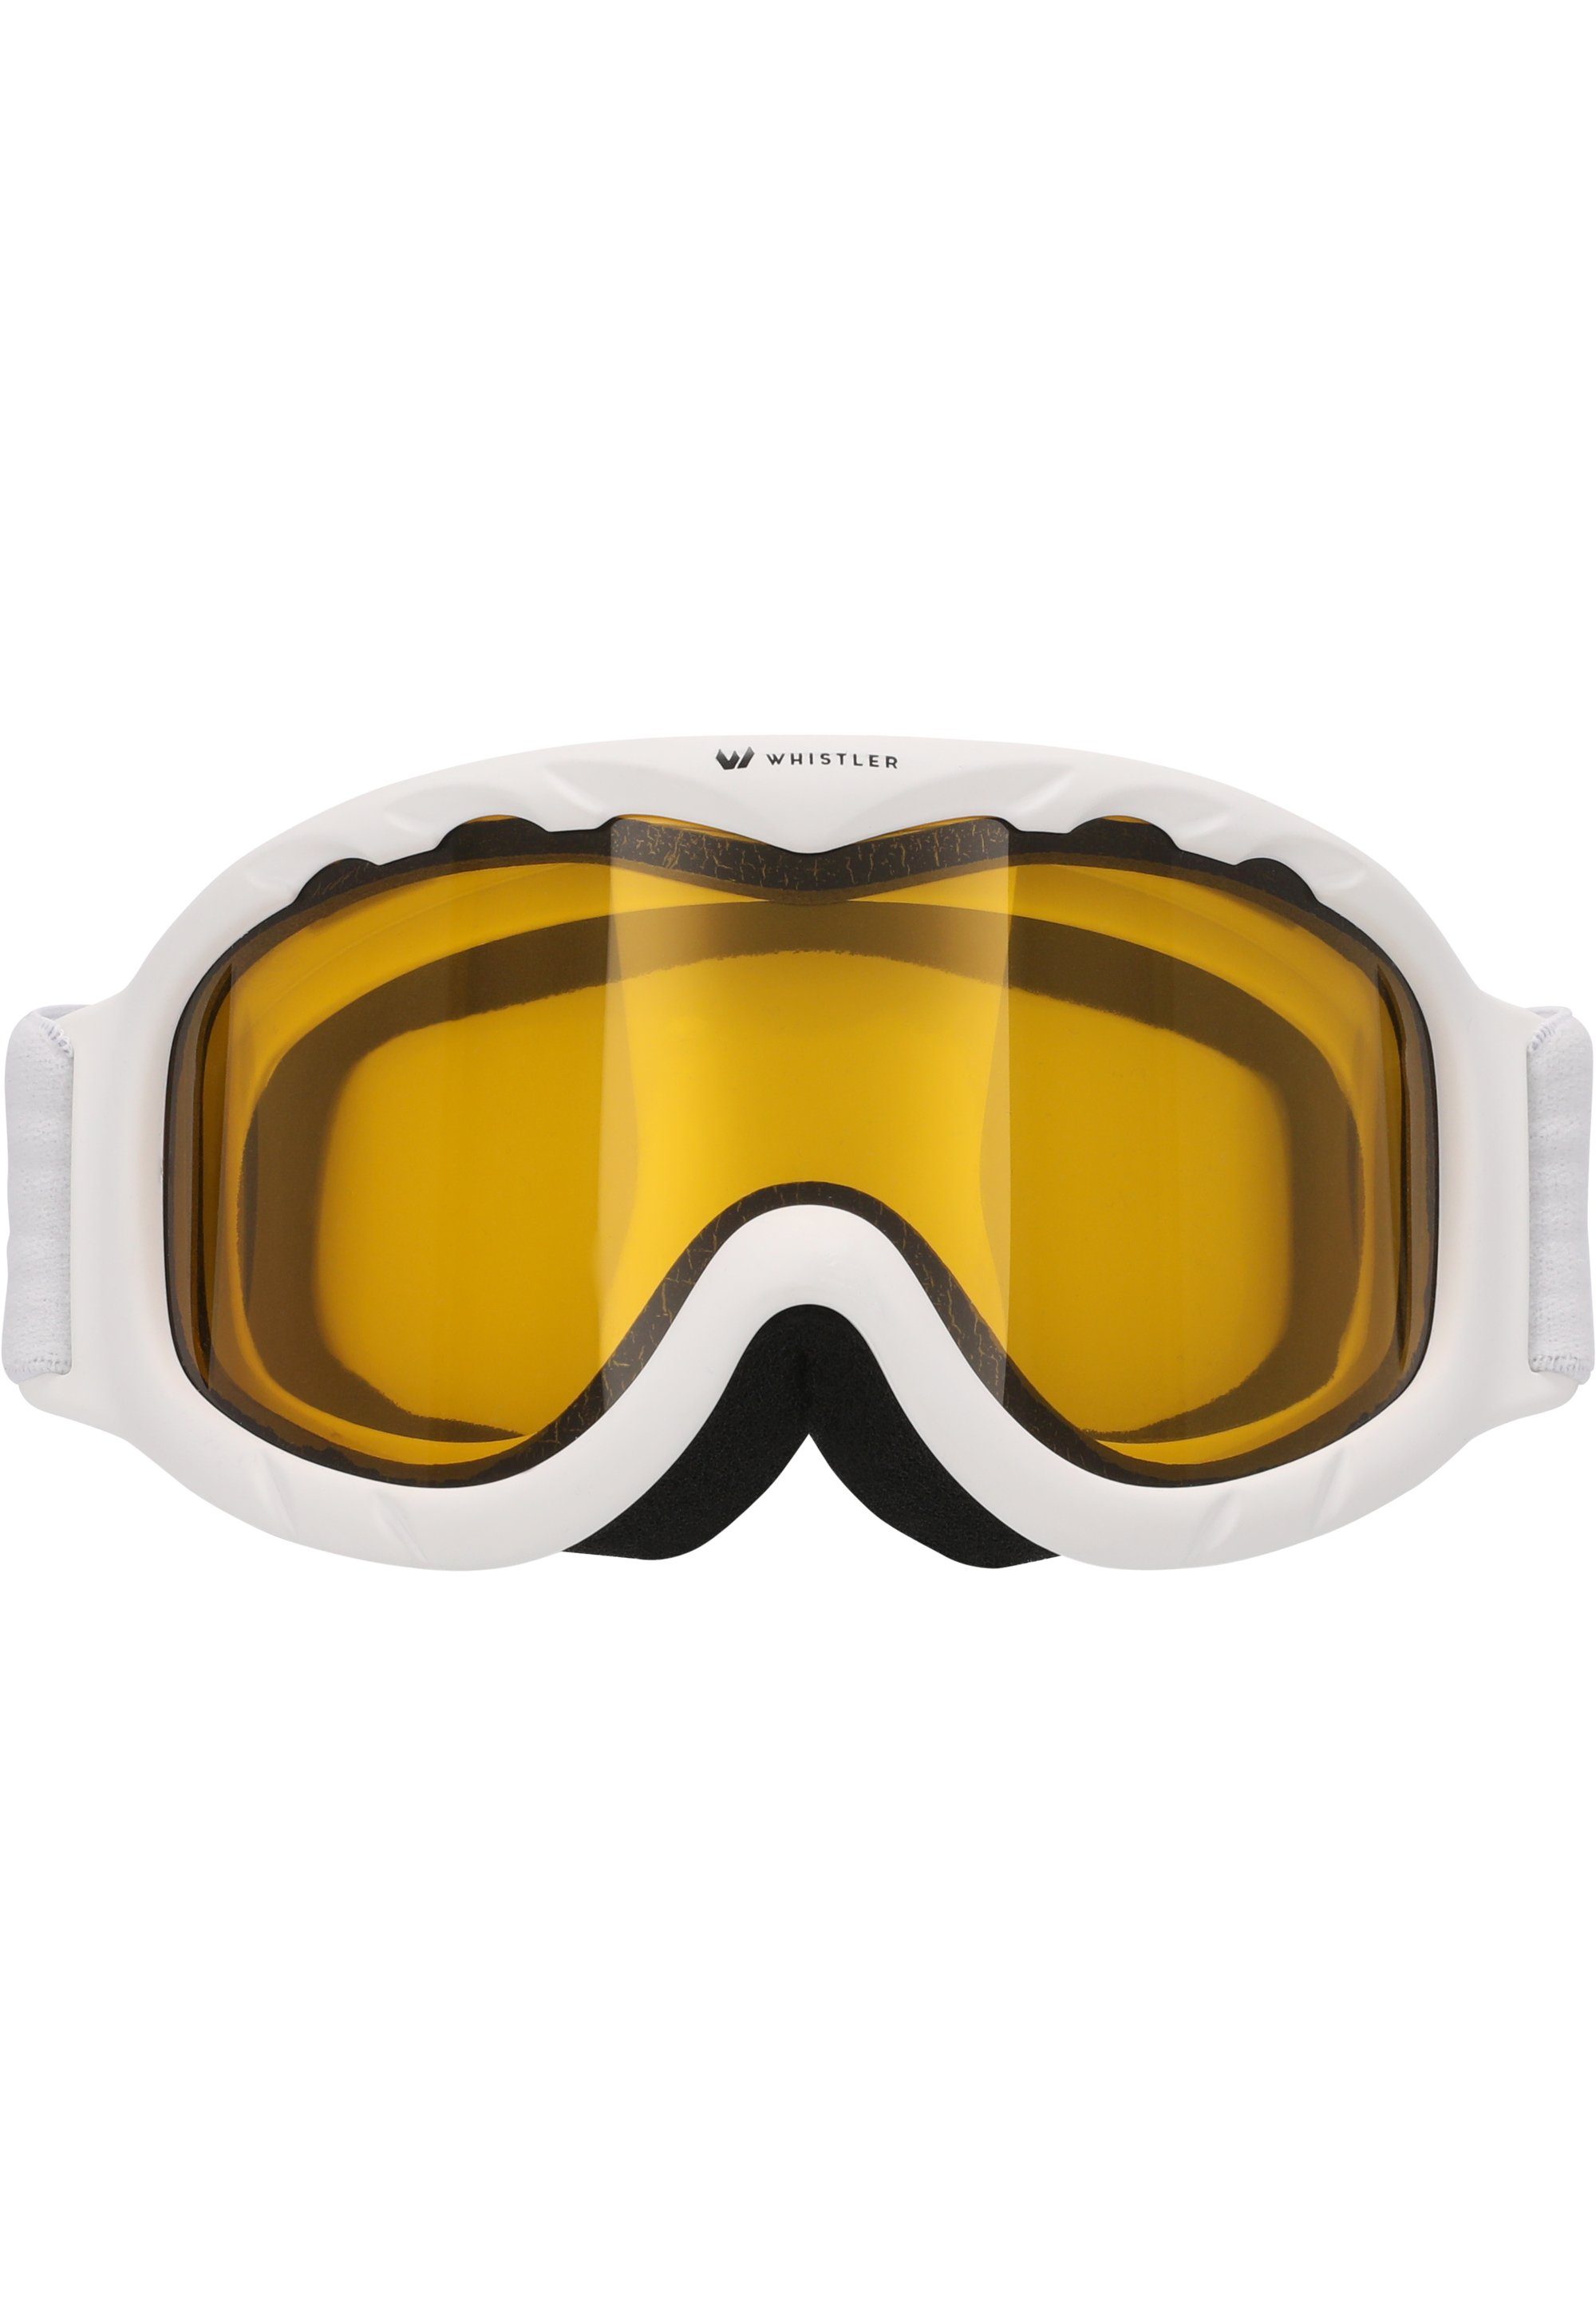 WHISTLER Skibrille WS300 Ski Goggle, Anti-Fog-Beschichtung Jr. mit